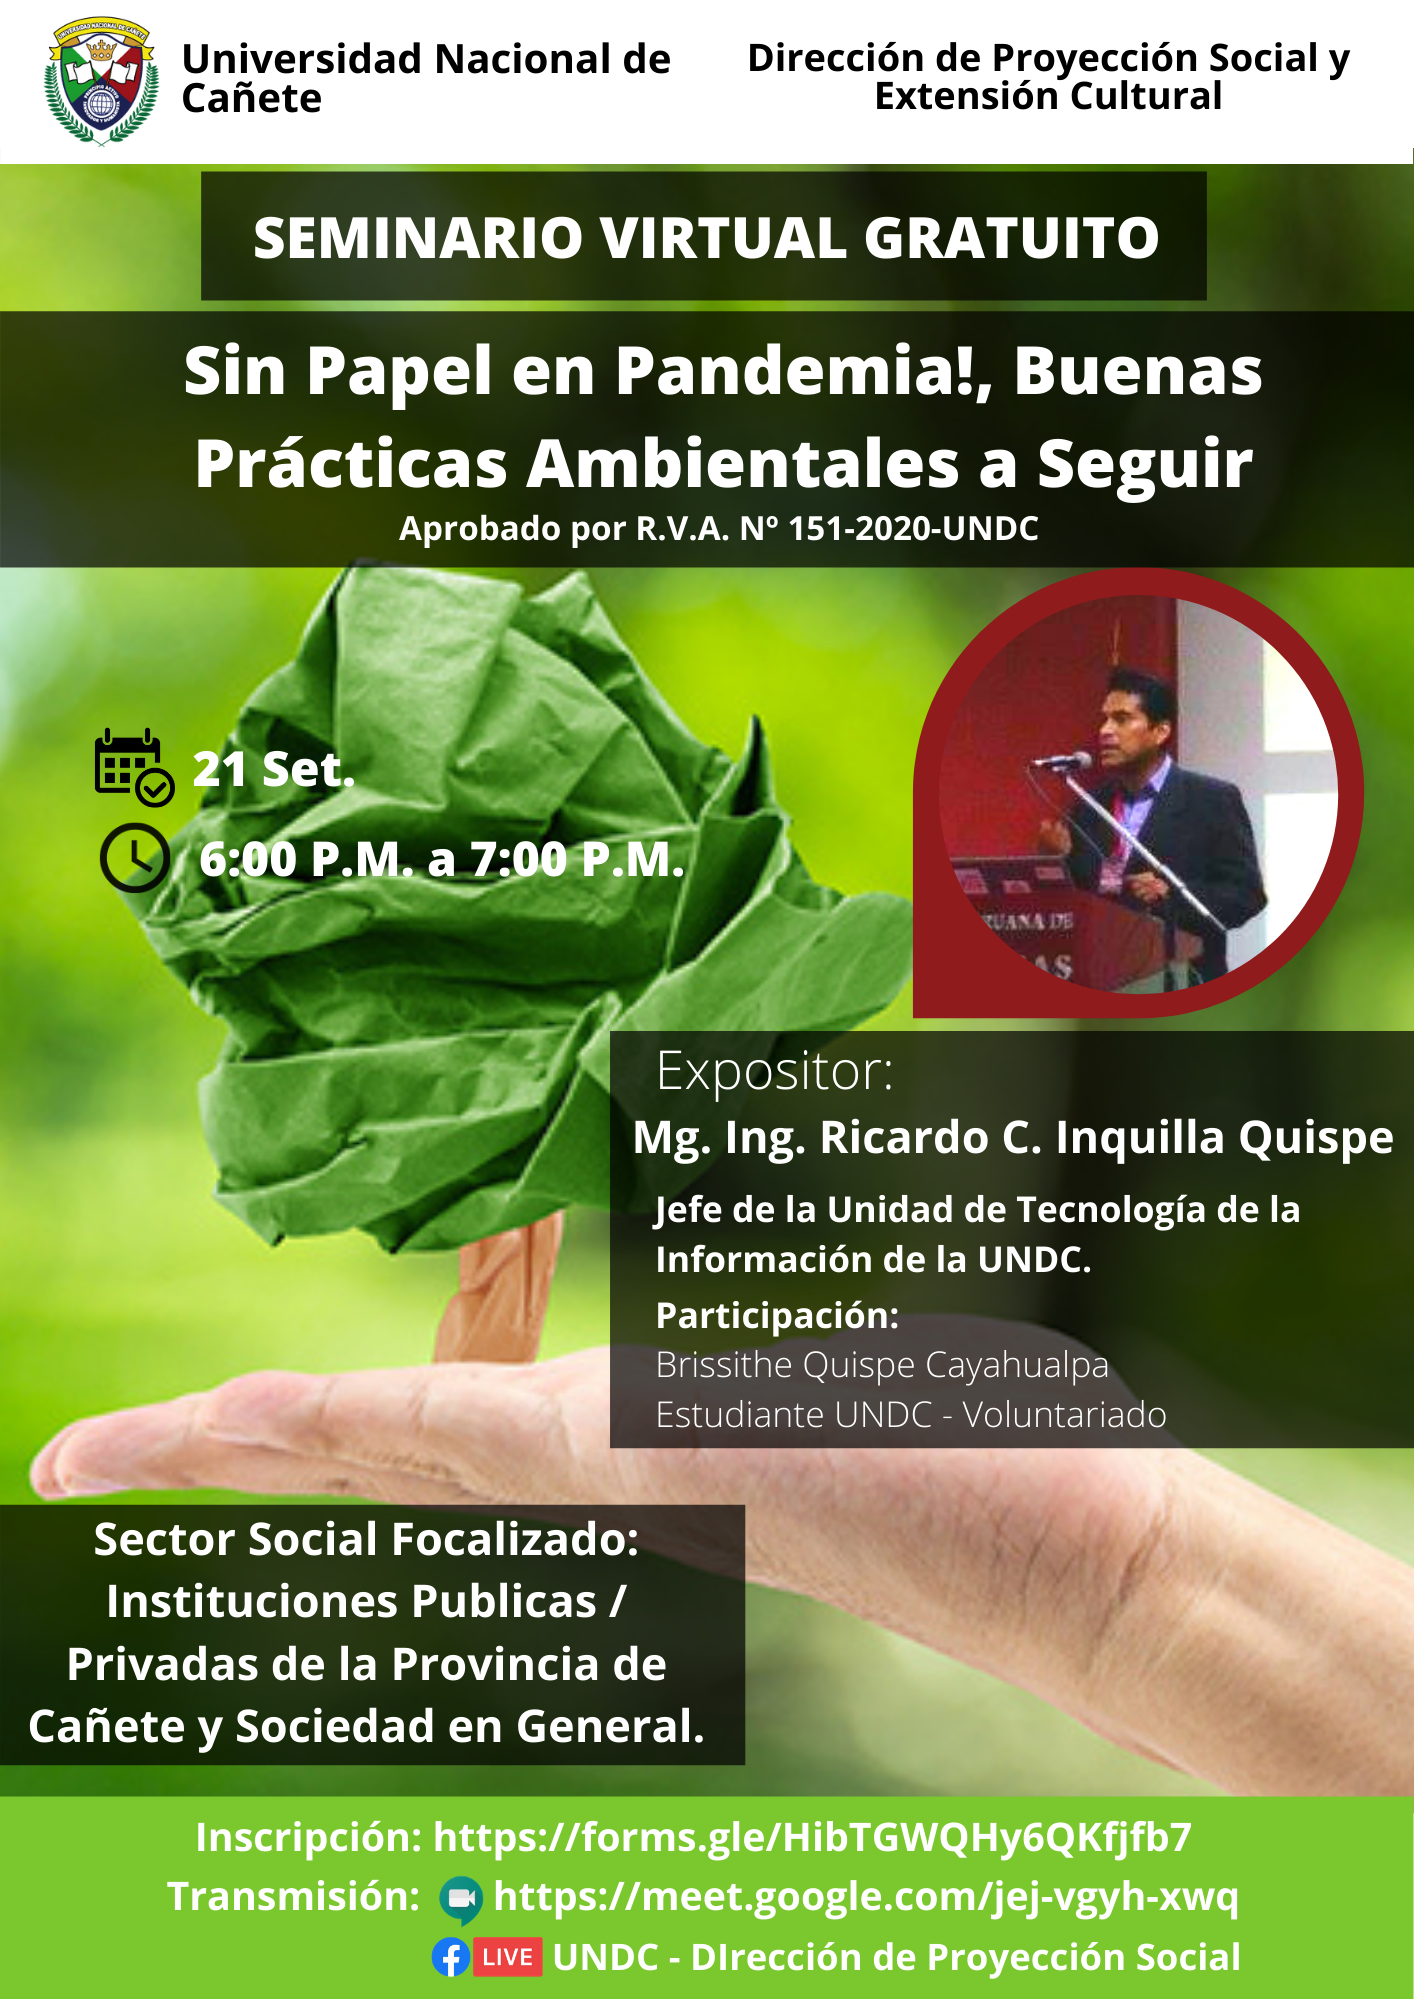 Seminario Virtual Gratuito: Sin Papel en Pandemia!, Buenas Prácticas Ambientales a Seguir.